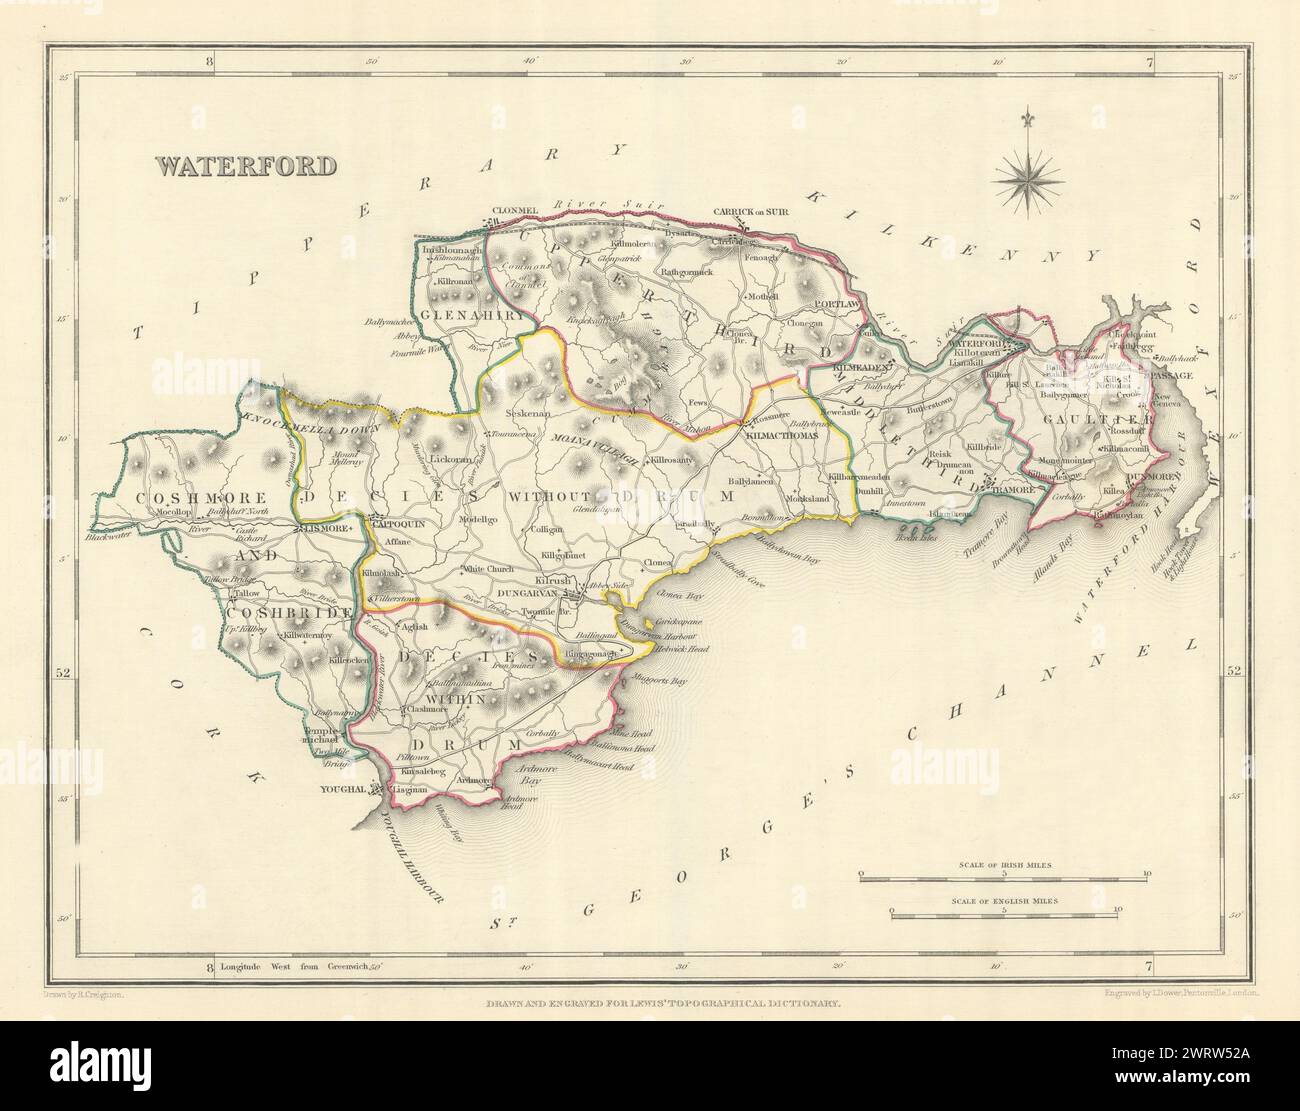 Mappa antica DELLA CONTEA DI WATERFORD per LEWIS di CREIGHTON & DOWER. Irlanda 1850 Foto Stock